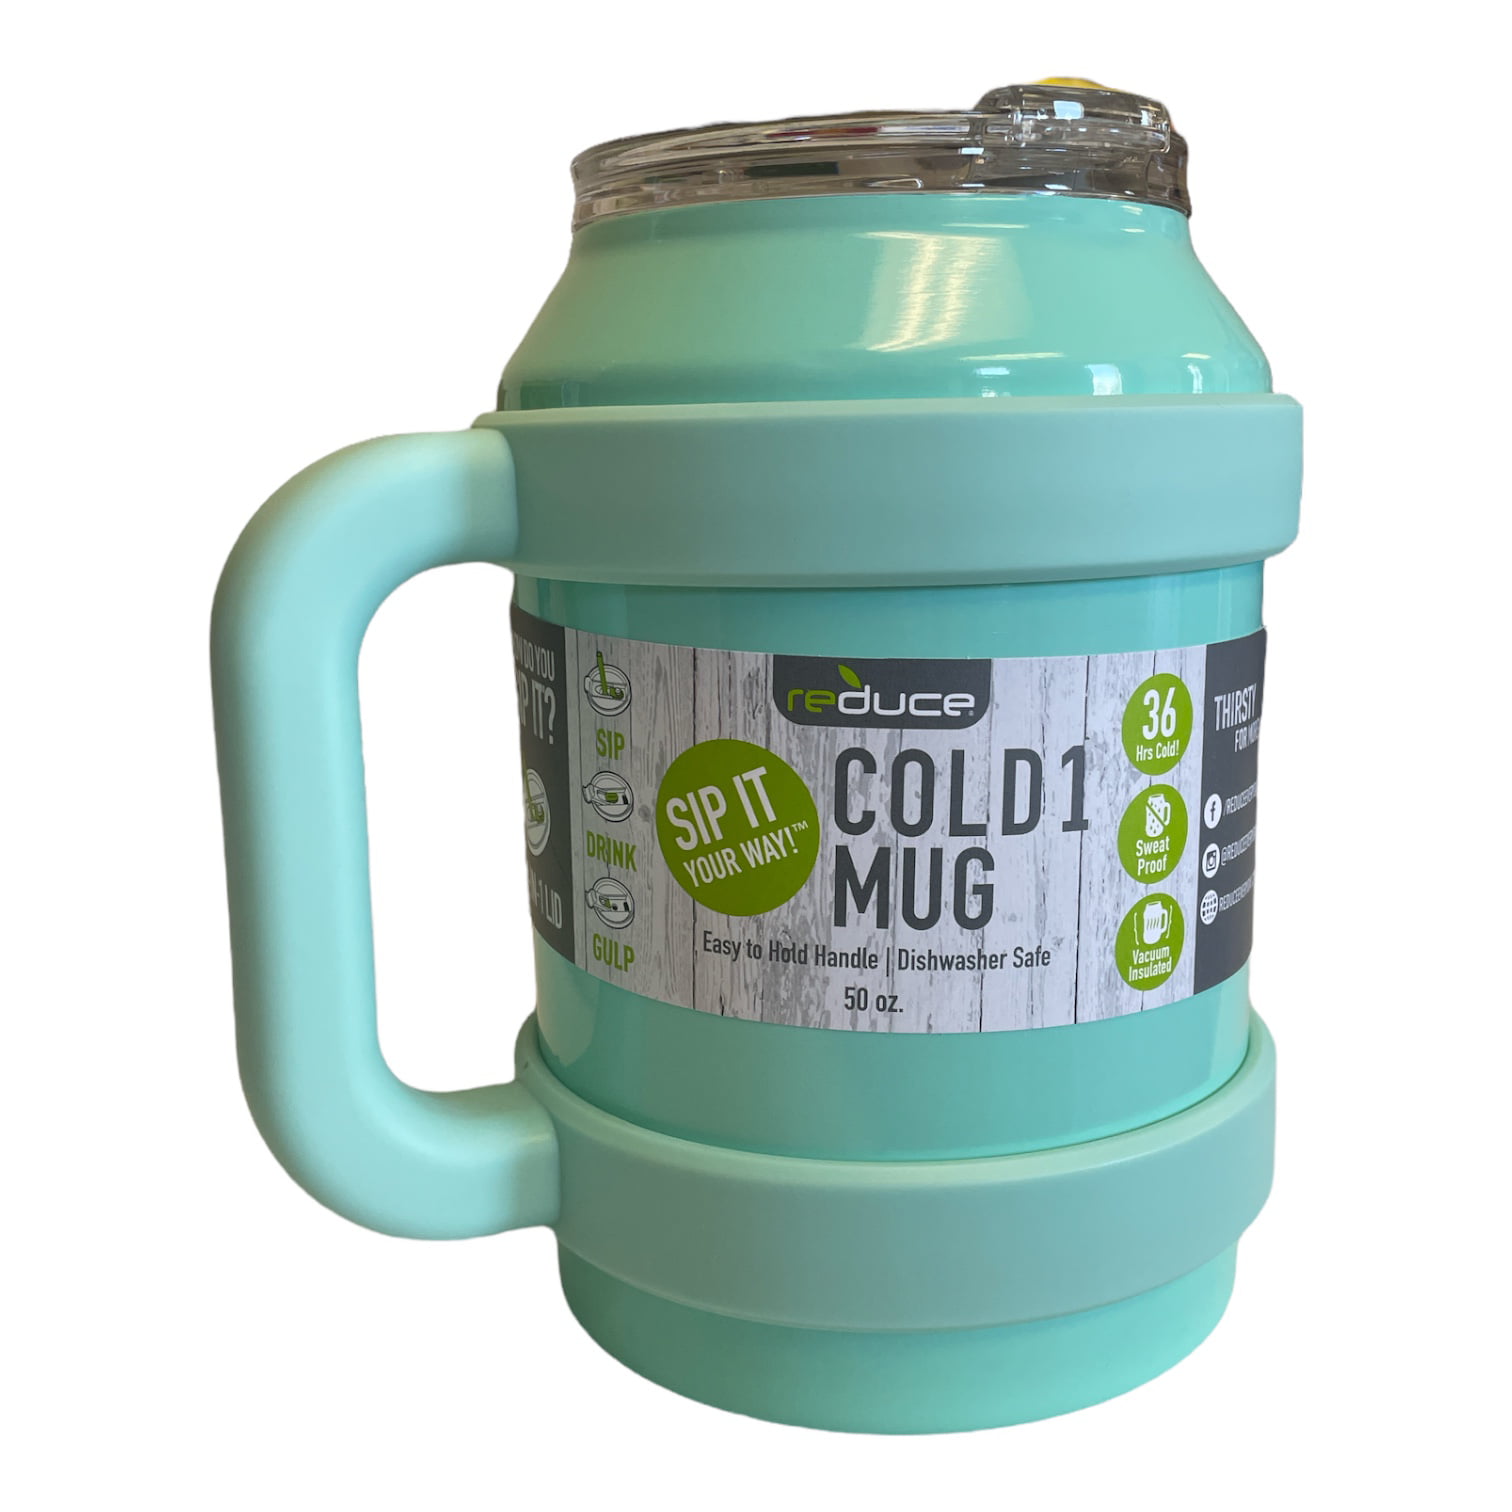 50 Oz. Reduce Cold1 Mug - White - Reduce - Q649522 QI